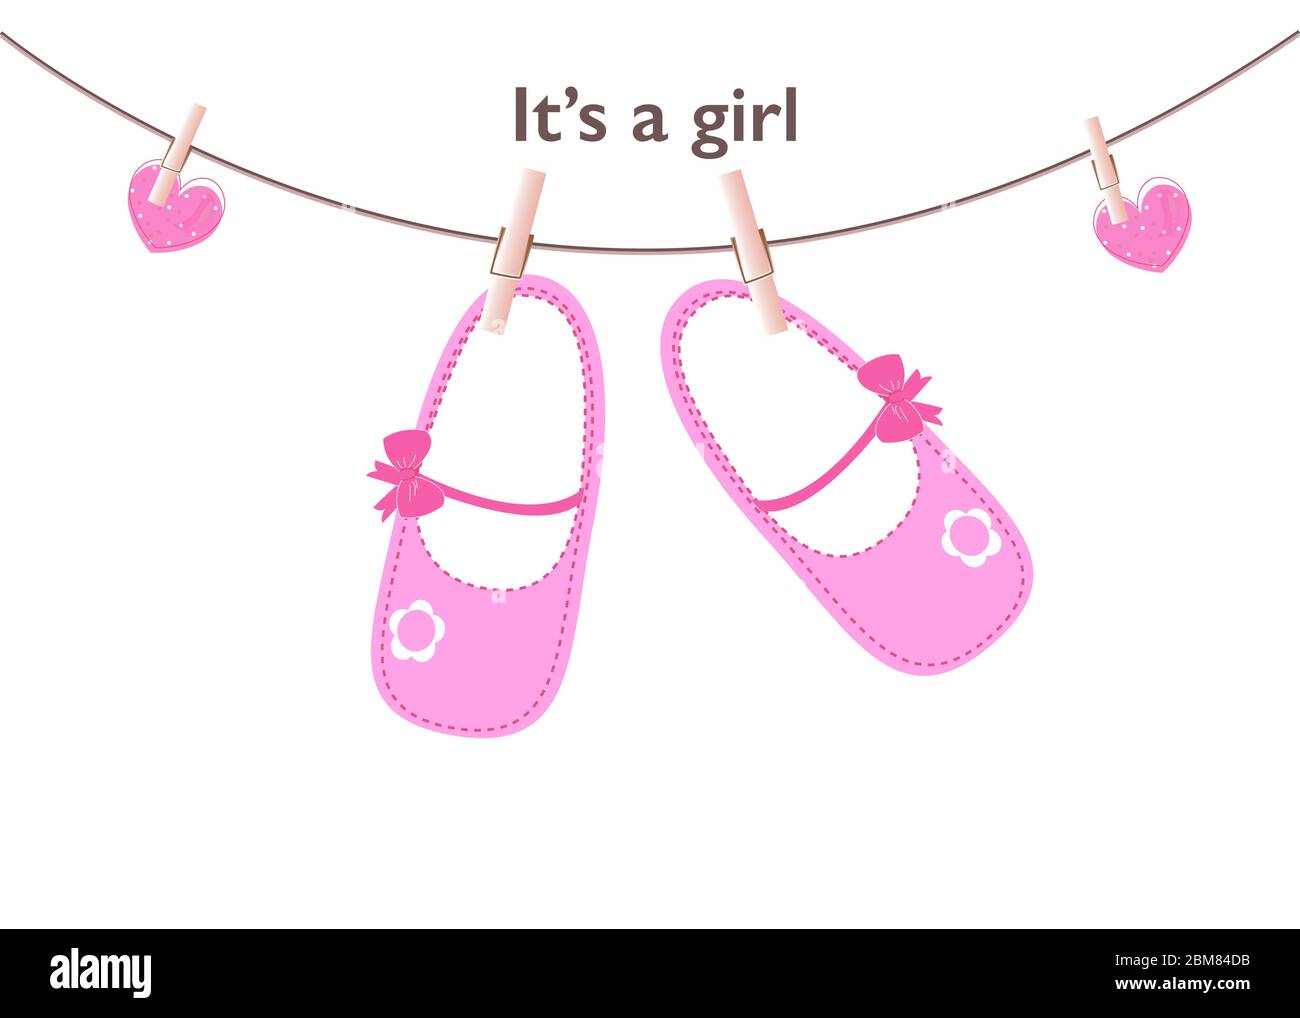 Thiệp chúc mừng sinh em bé với hình ảnh đôi giày màu hồng cho bé sẽ truyền tải một thông điệp đầy yêu thương và chân thành. Hãy để cho hình ảnh này mang lại cho bạn những ký ức ngọt ngào và đáng nhớ.